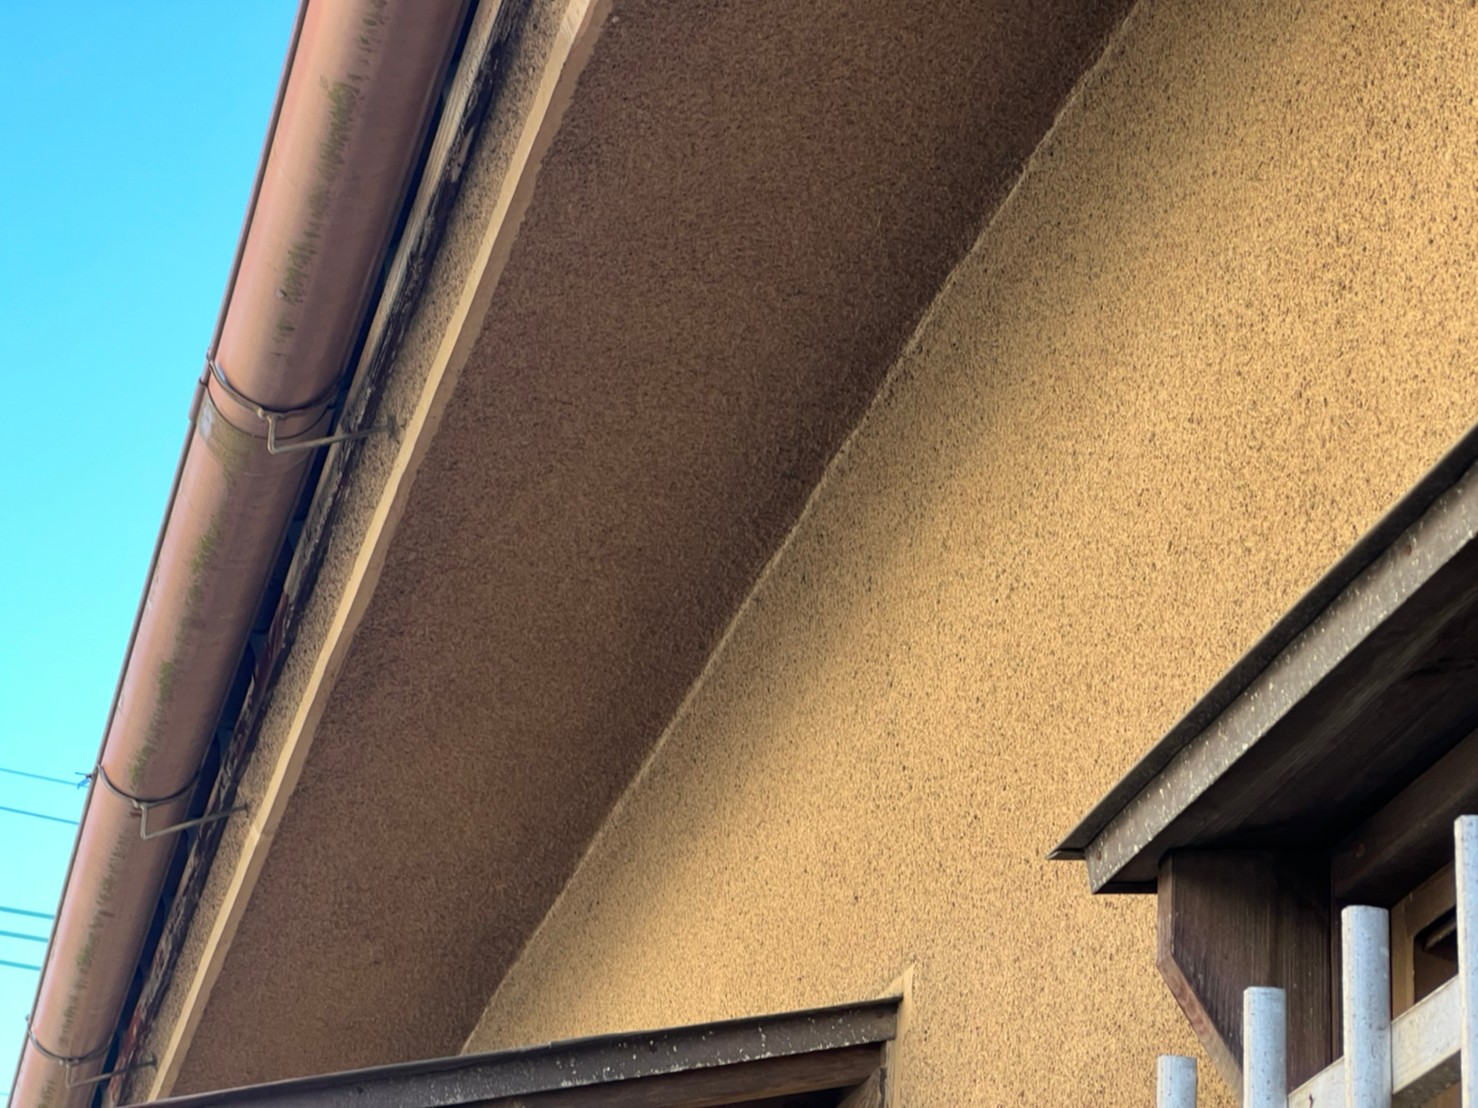 外壁塗装 大工 屋根漆喰工事 日本家屋 劣化